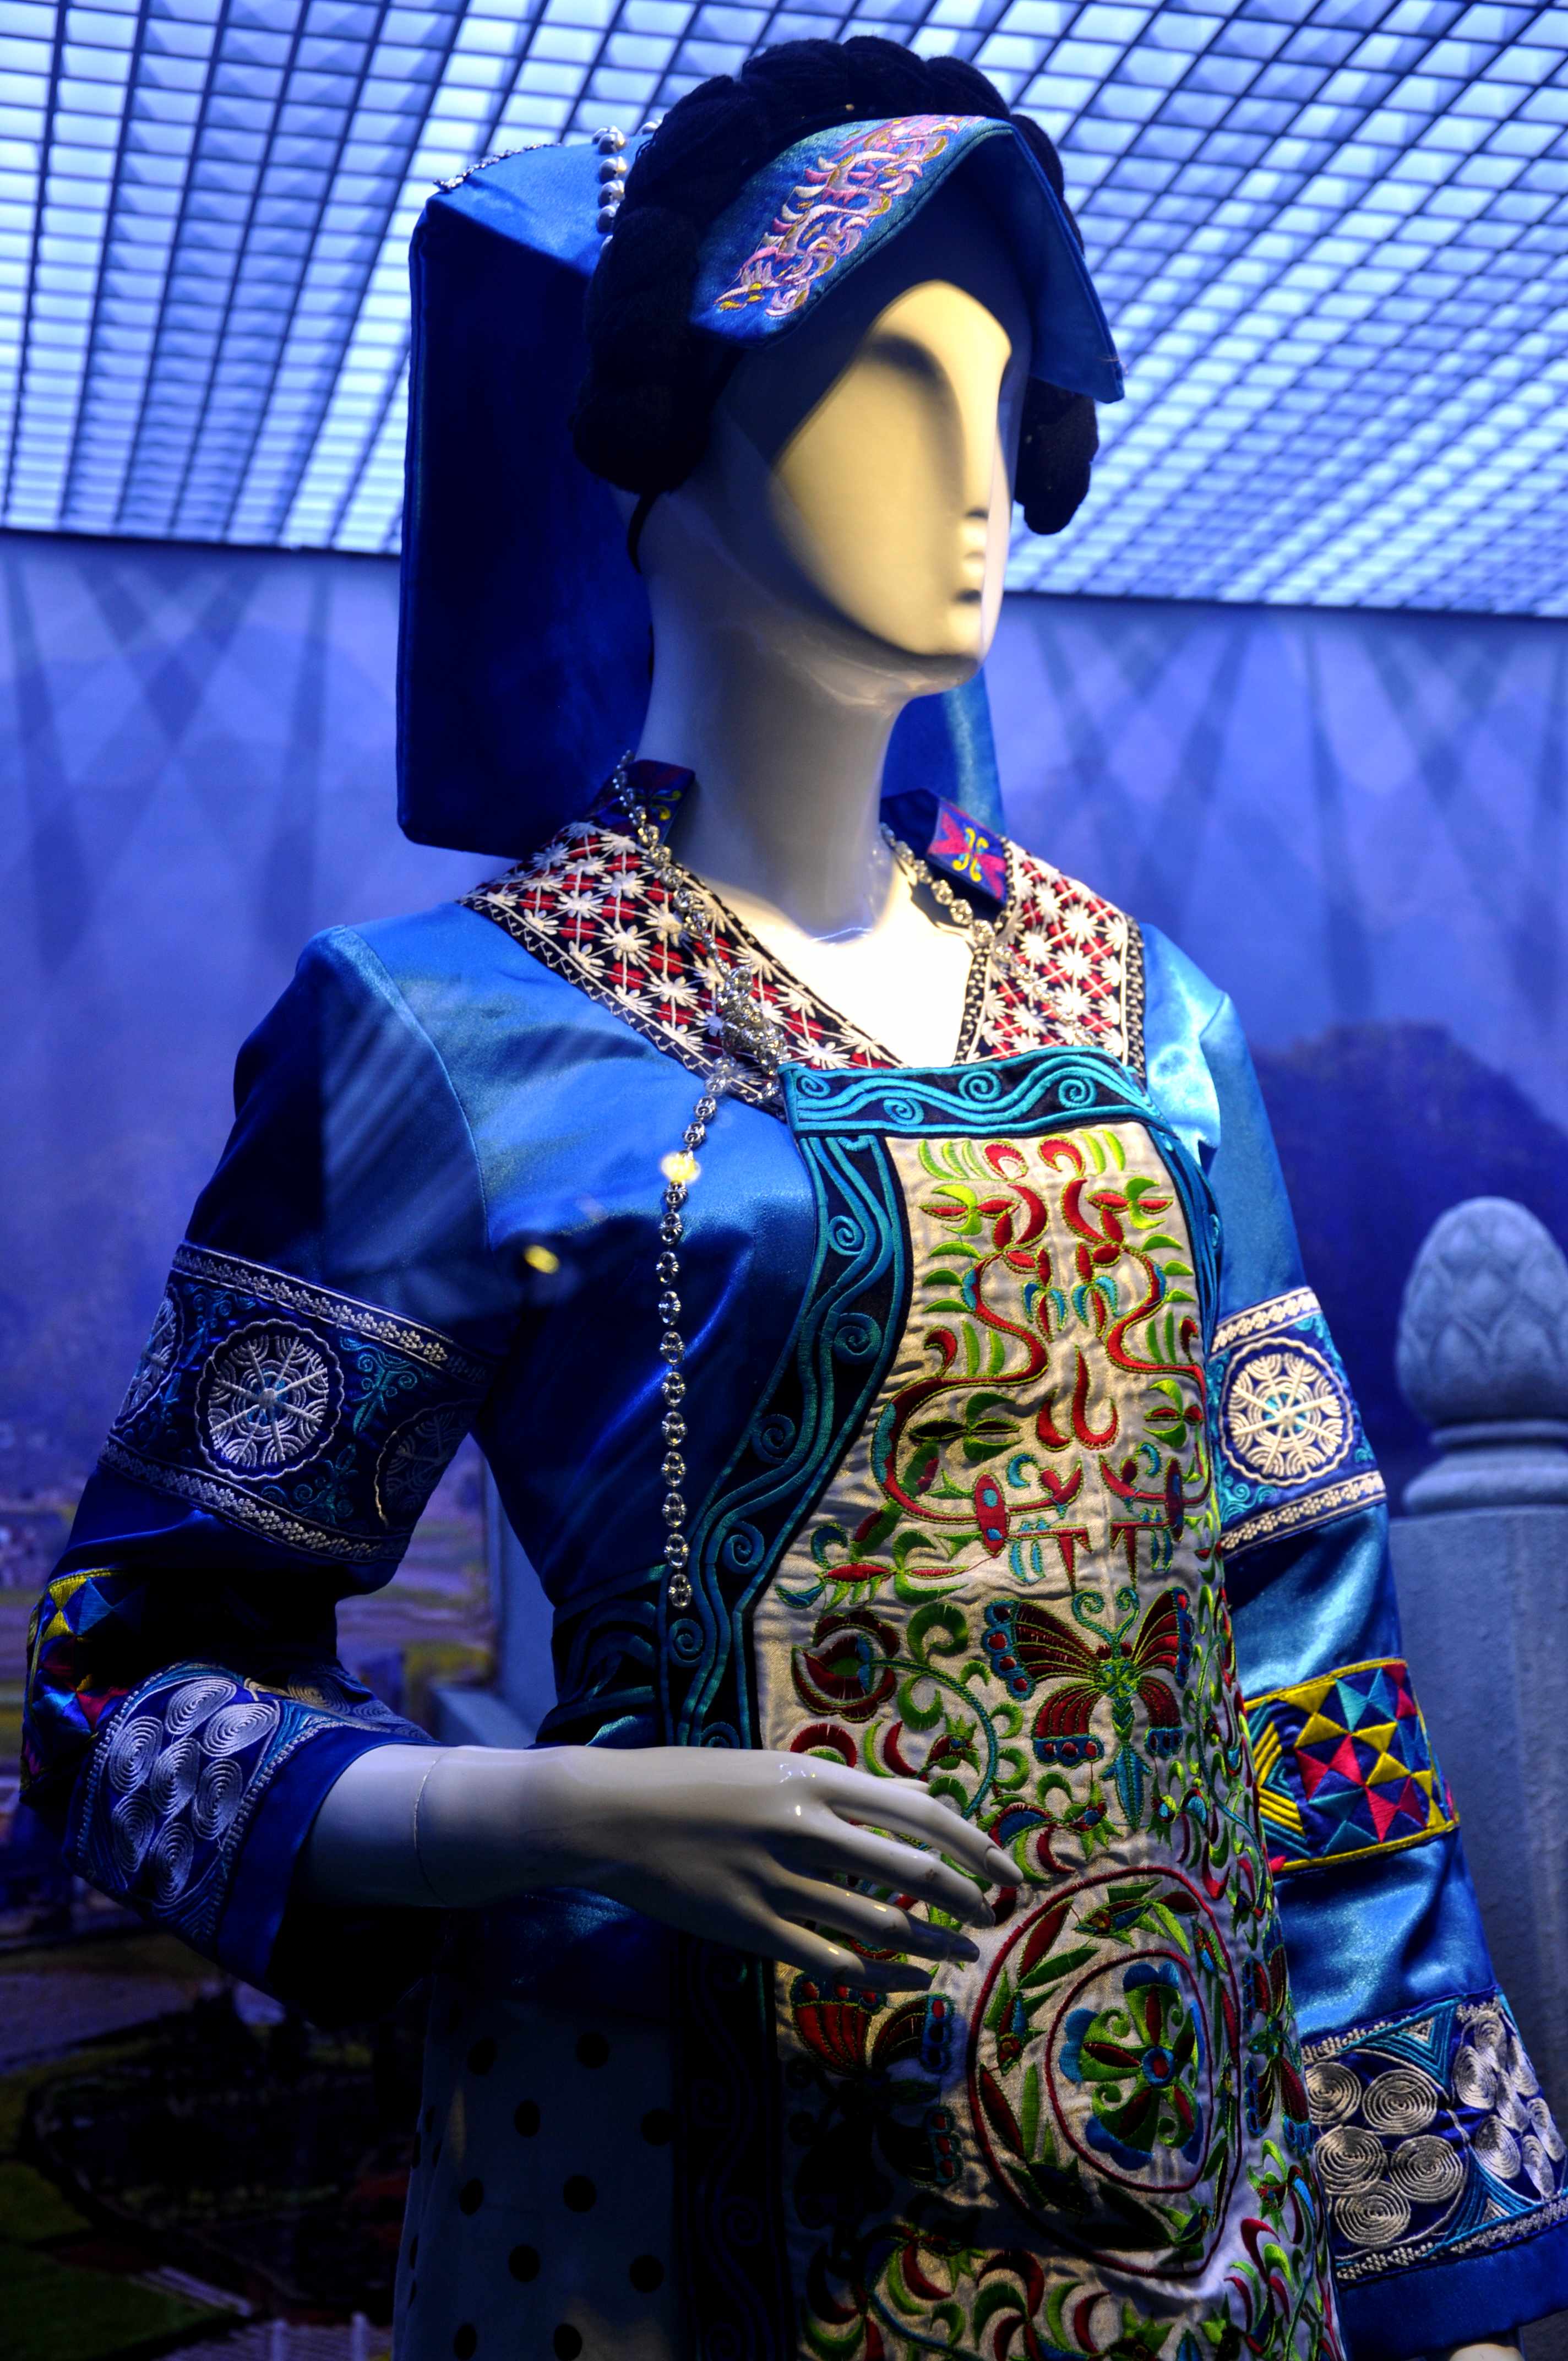 17—18世纪欧洲女士服饰时尚的更迭变化。